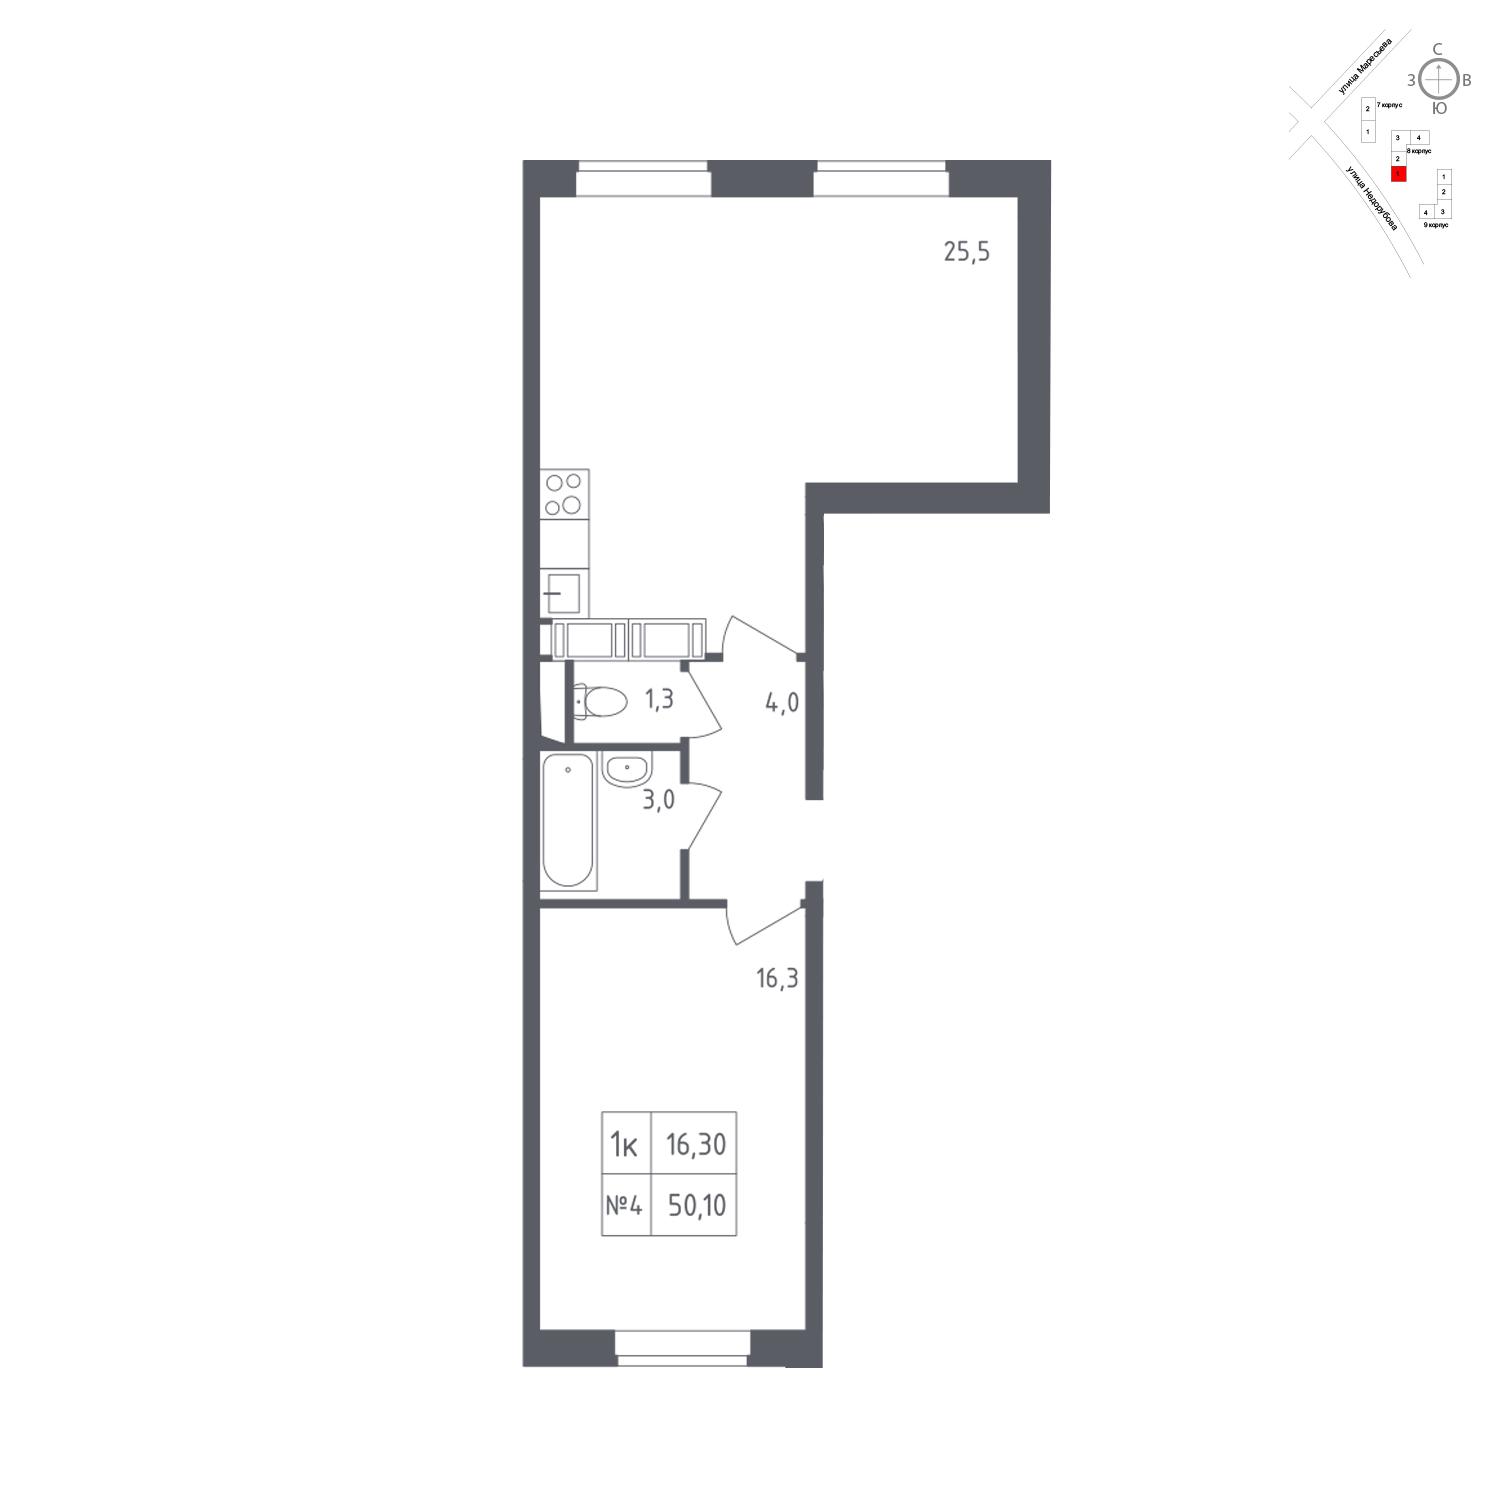 Продаётся 1-комнатная квартира в новостройке 50.1 кв.м. этаж 23/23 за 7 140 091 руб 